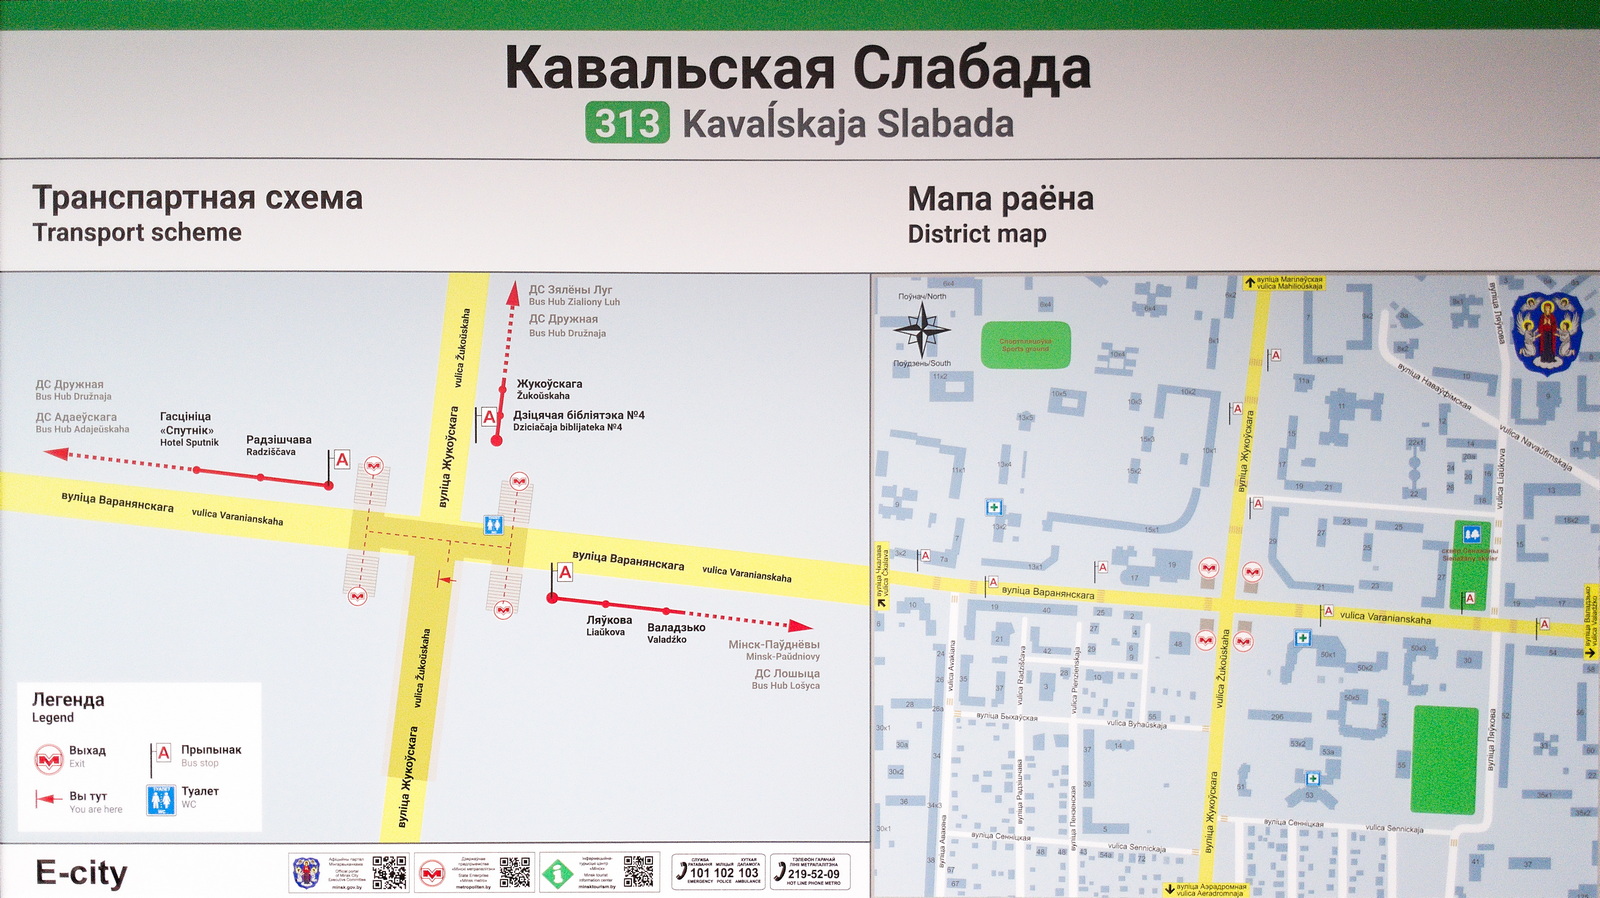 Минск — Метрополитен — [3] Зеленолужская линия